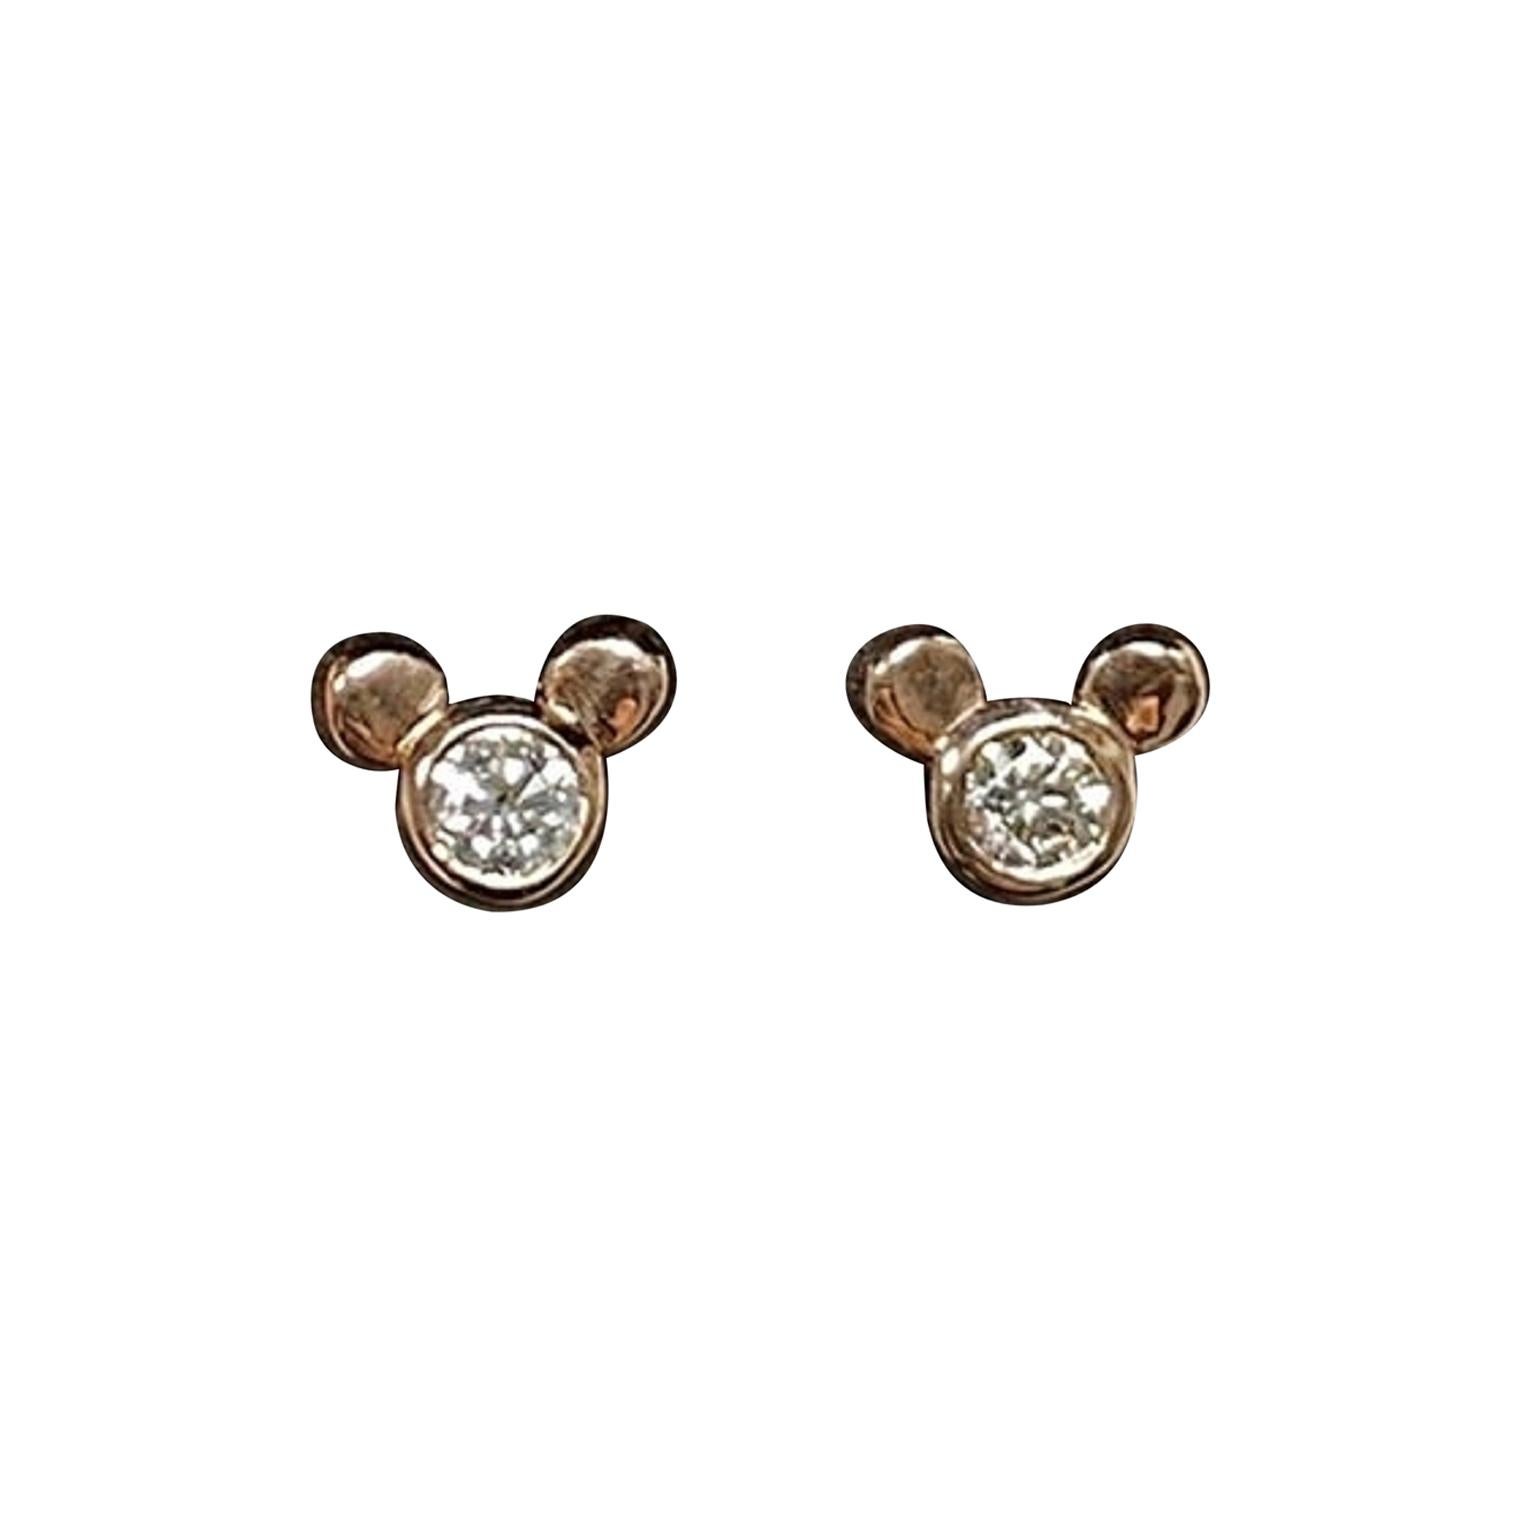 Animal Earrings Lizard | Earrings Gold Lizard | Cute Animal Earrings | Rose  Gold Earrings - Dangle Earrings - Aliexpress